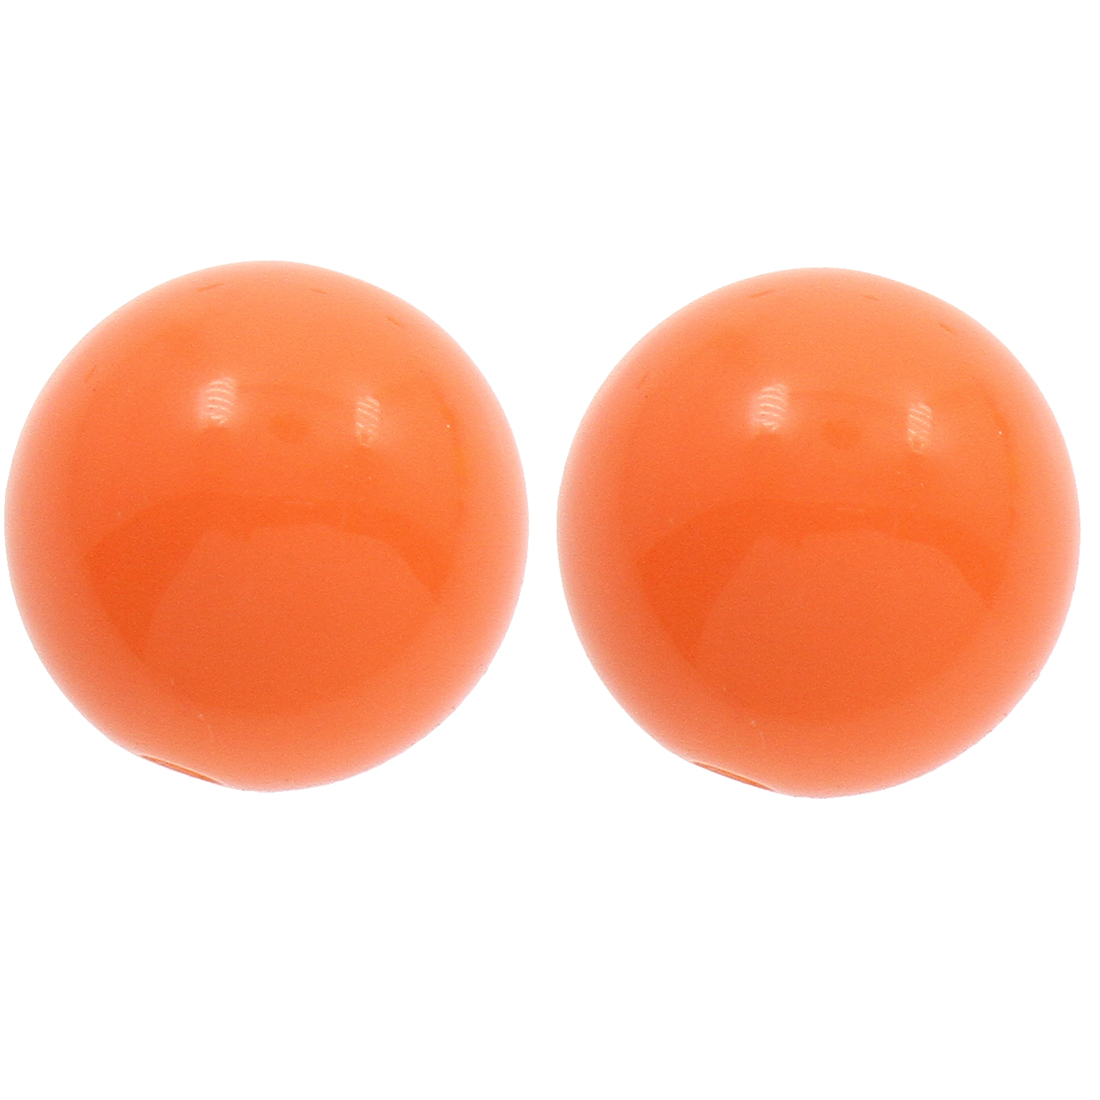 2 orange